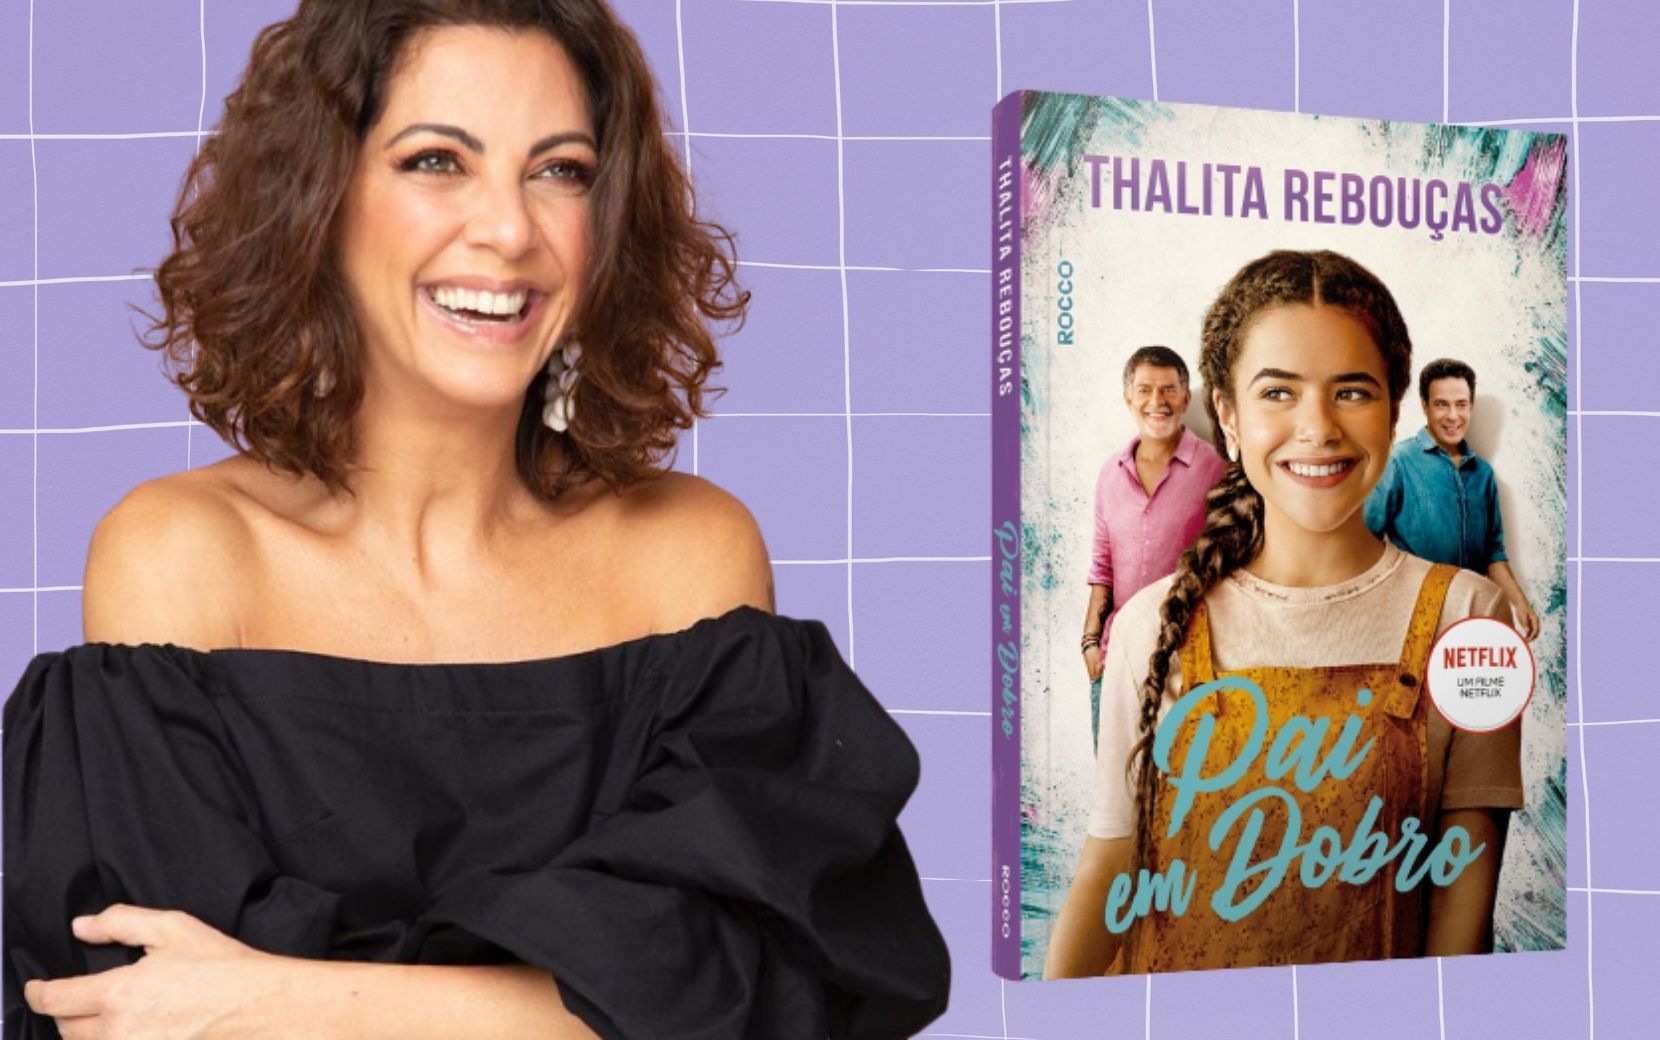 Completando 20 anos de carreira, Thalita Rebouças lança novo livro “Pai em dobro”